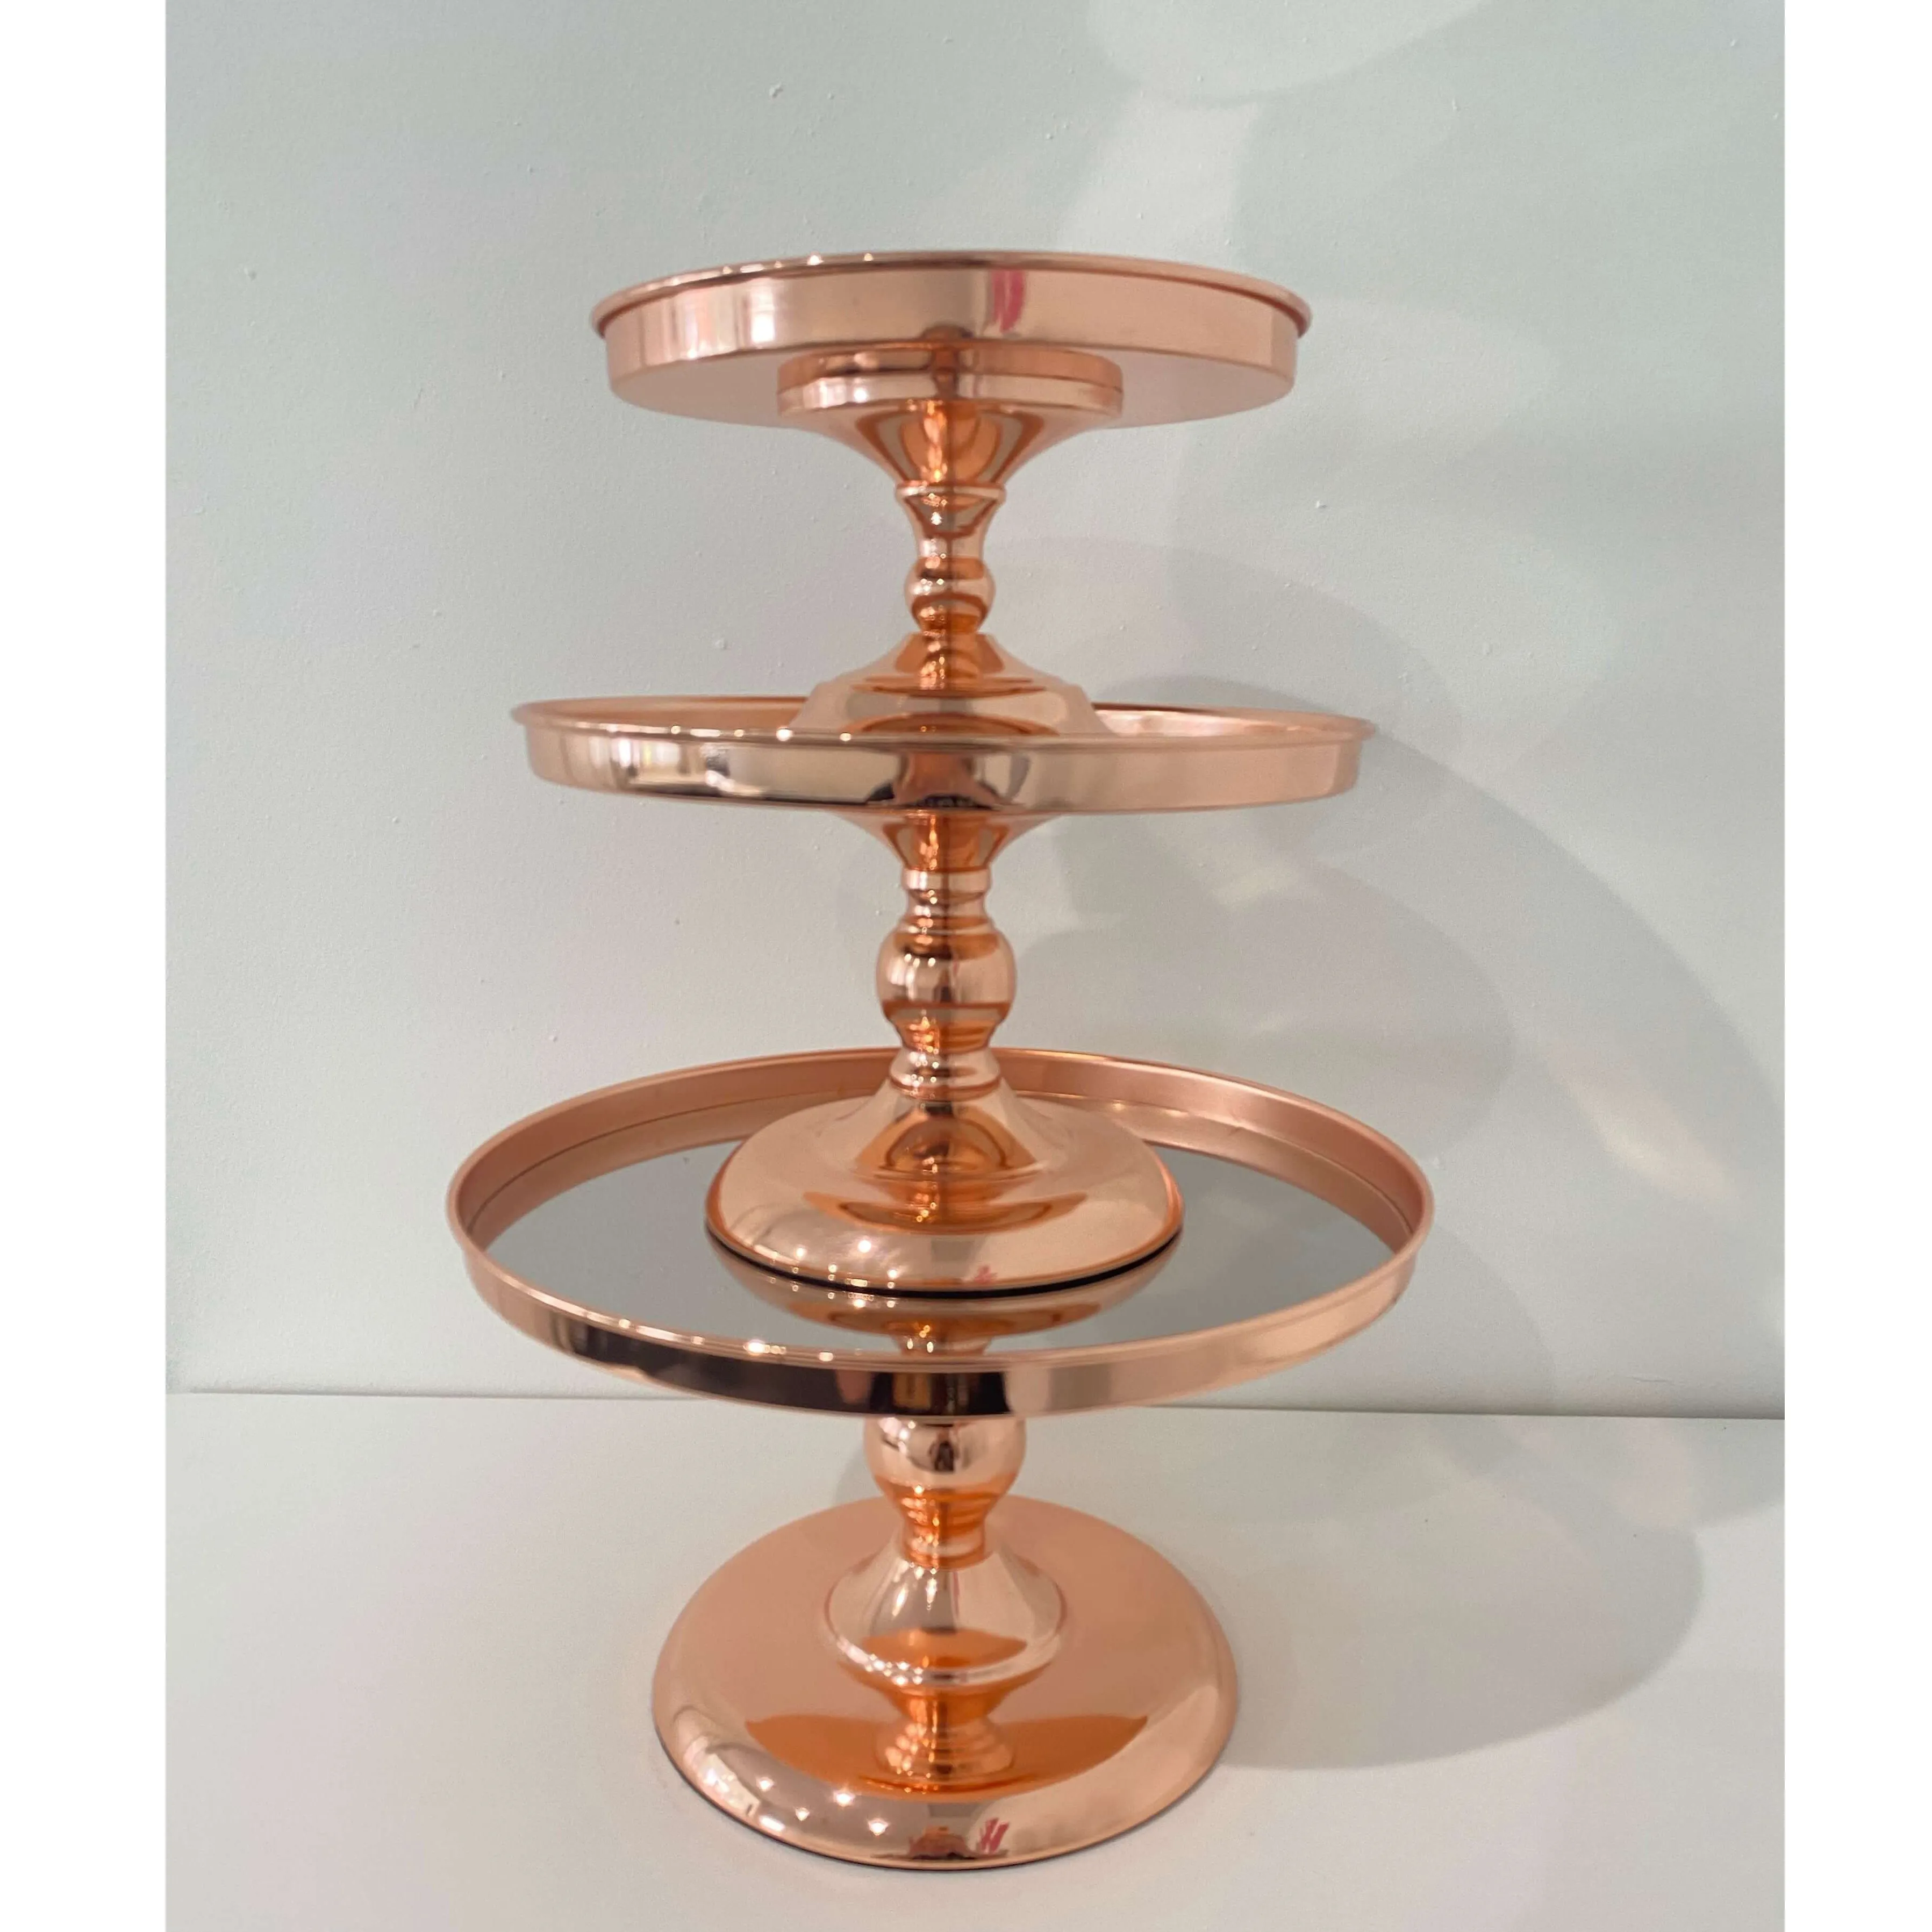 Vintage recién llegado Juego de 3 soporte para pasteles Mesa decorativa centro de mesa utensilios de cocina Favor cocina Metal aluminio antiguo Color cobre